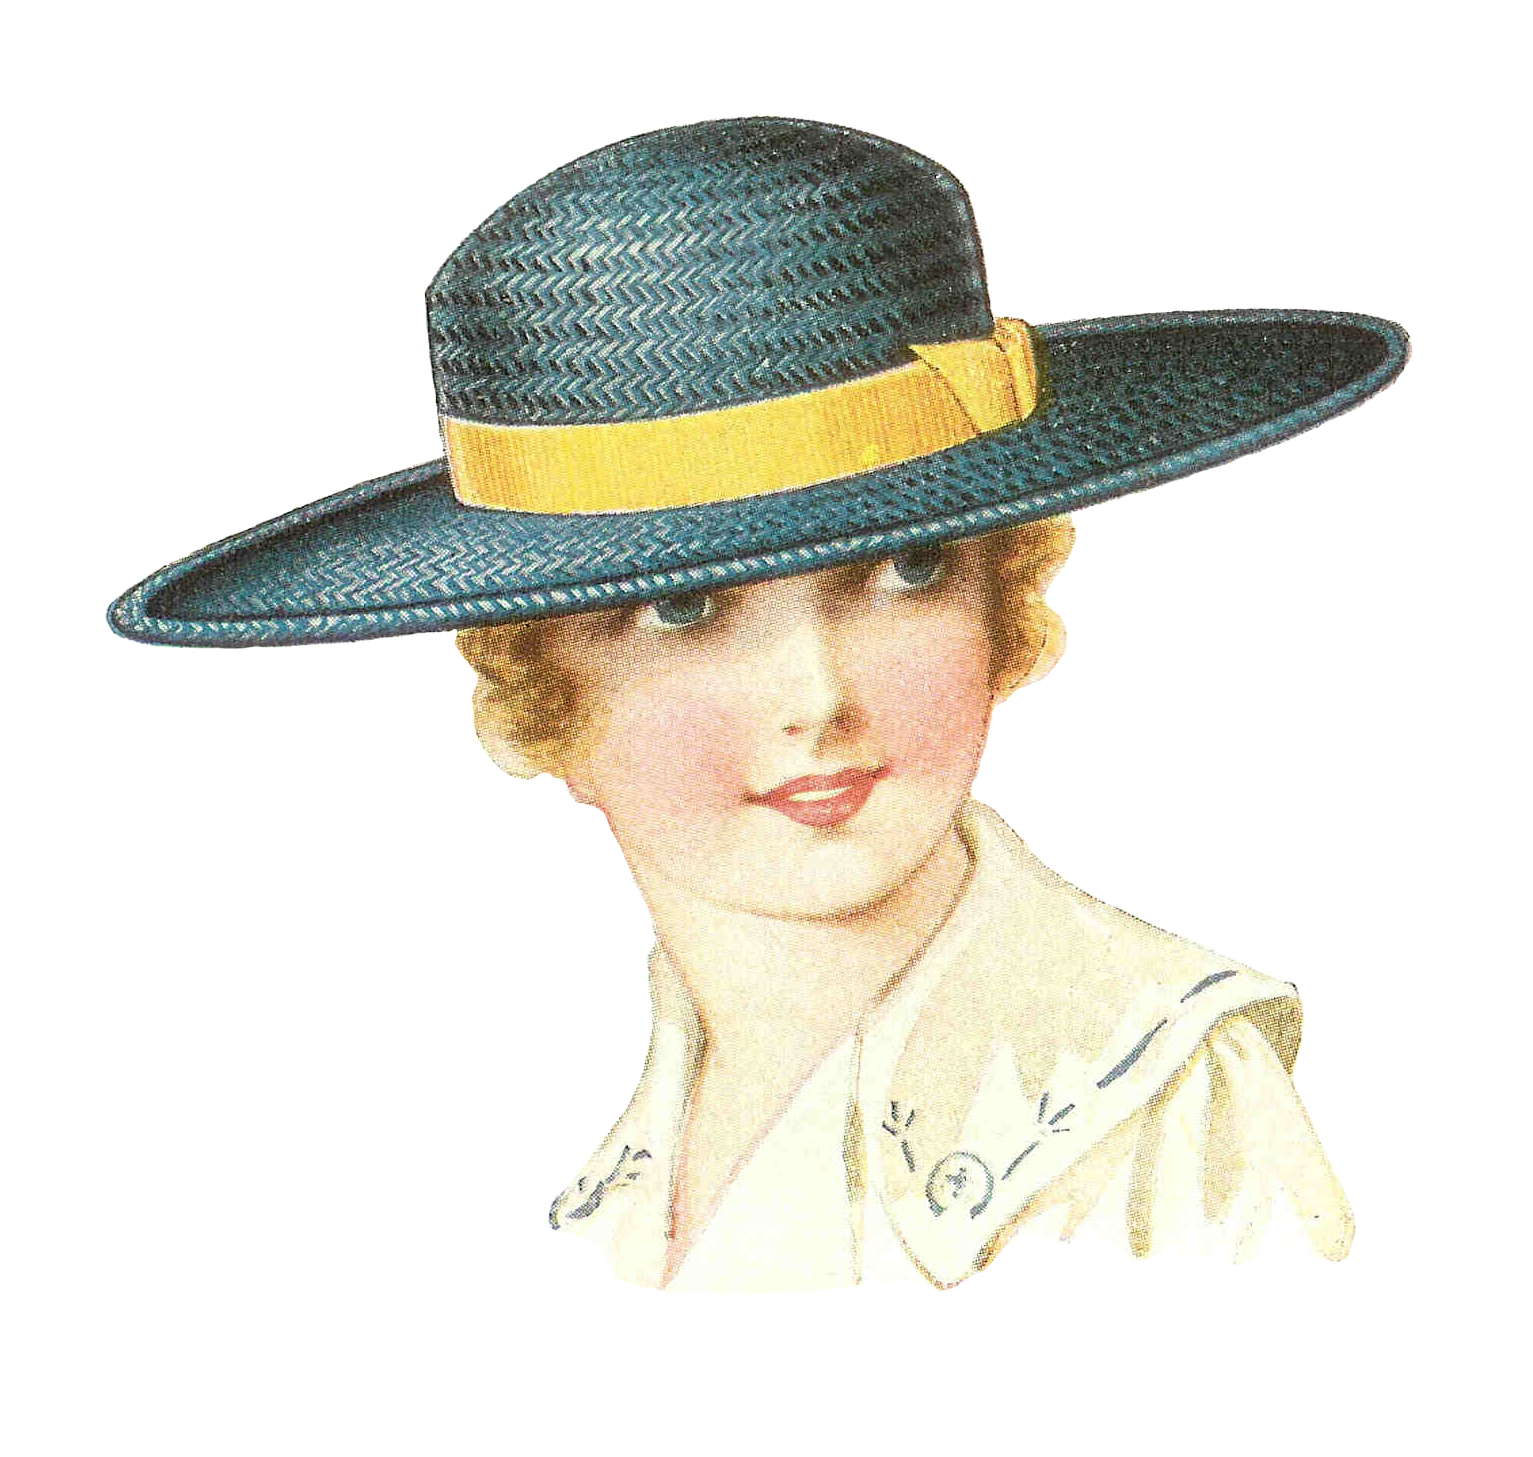 Vintage Straw Hat Transparent Background